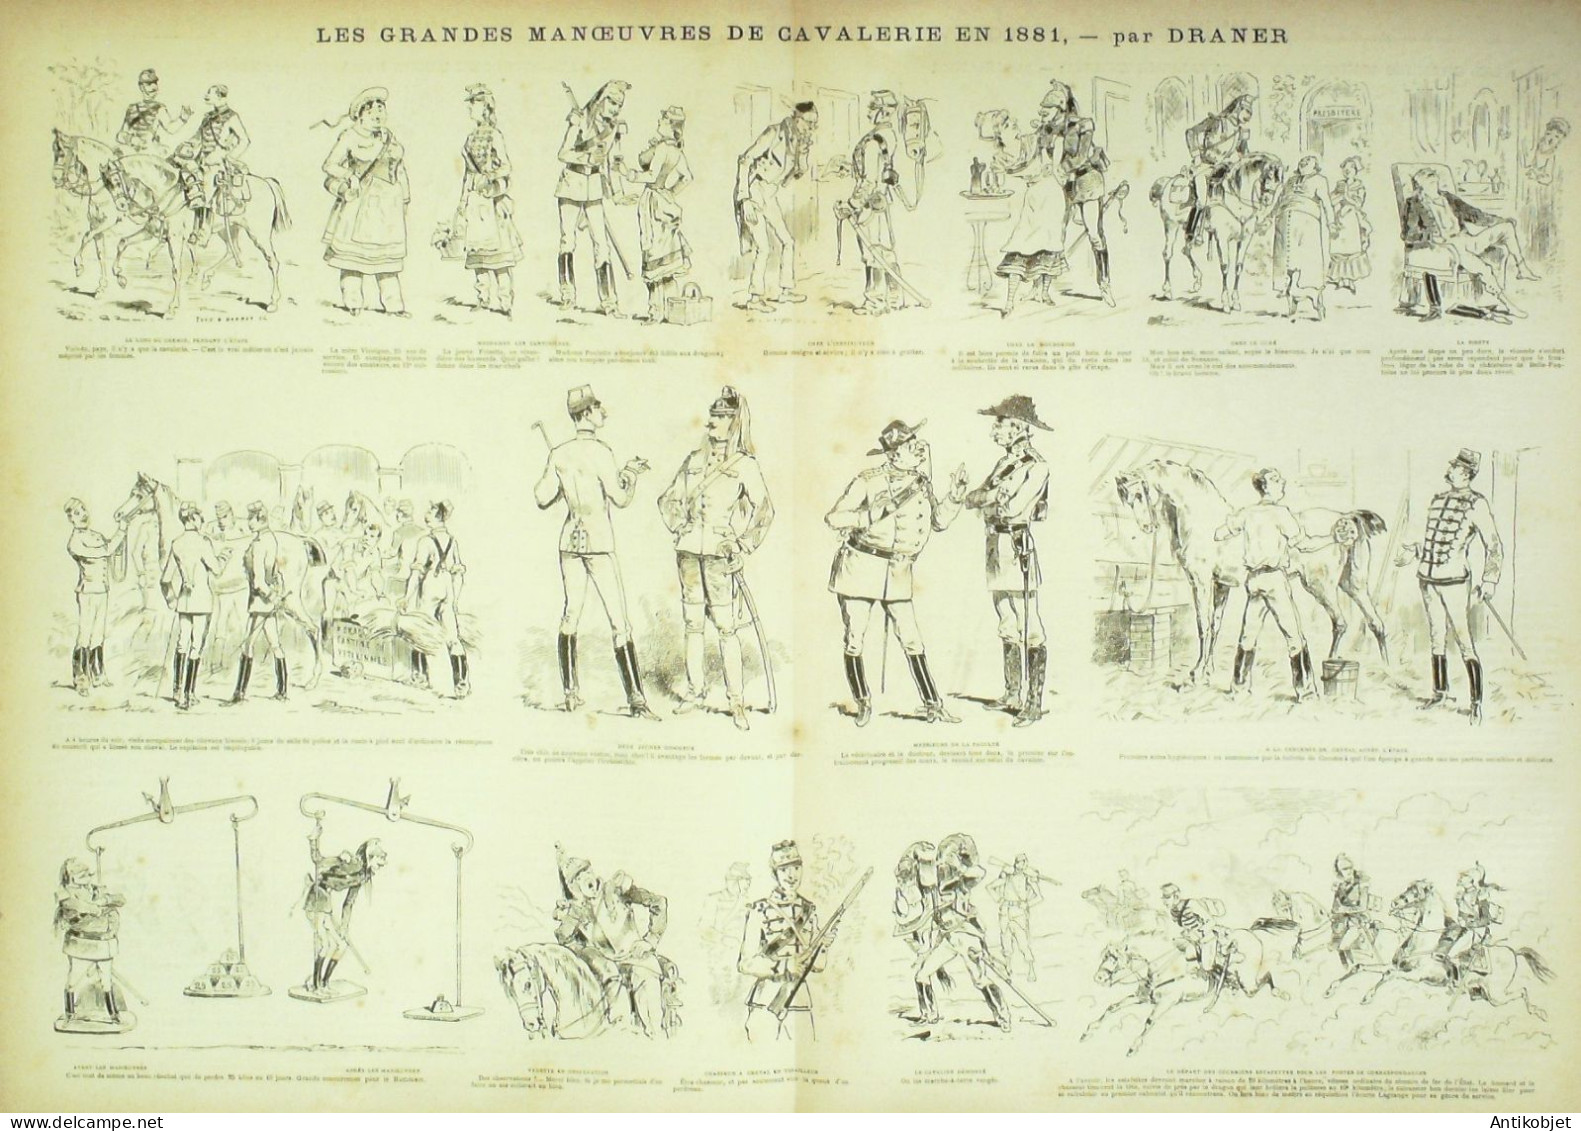 La Caricature 1881 N°  87 Manoeuvres De Cavalerie Barret Draner TROCK - Tijdschriften - Voor 1900